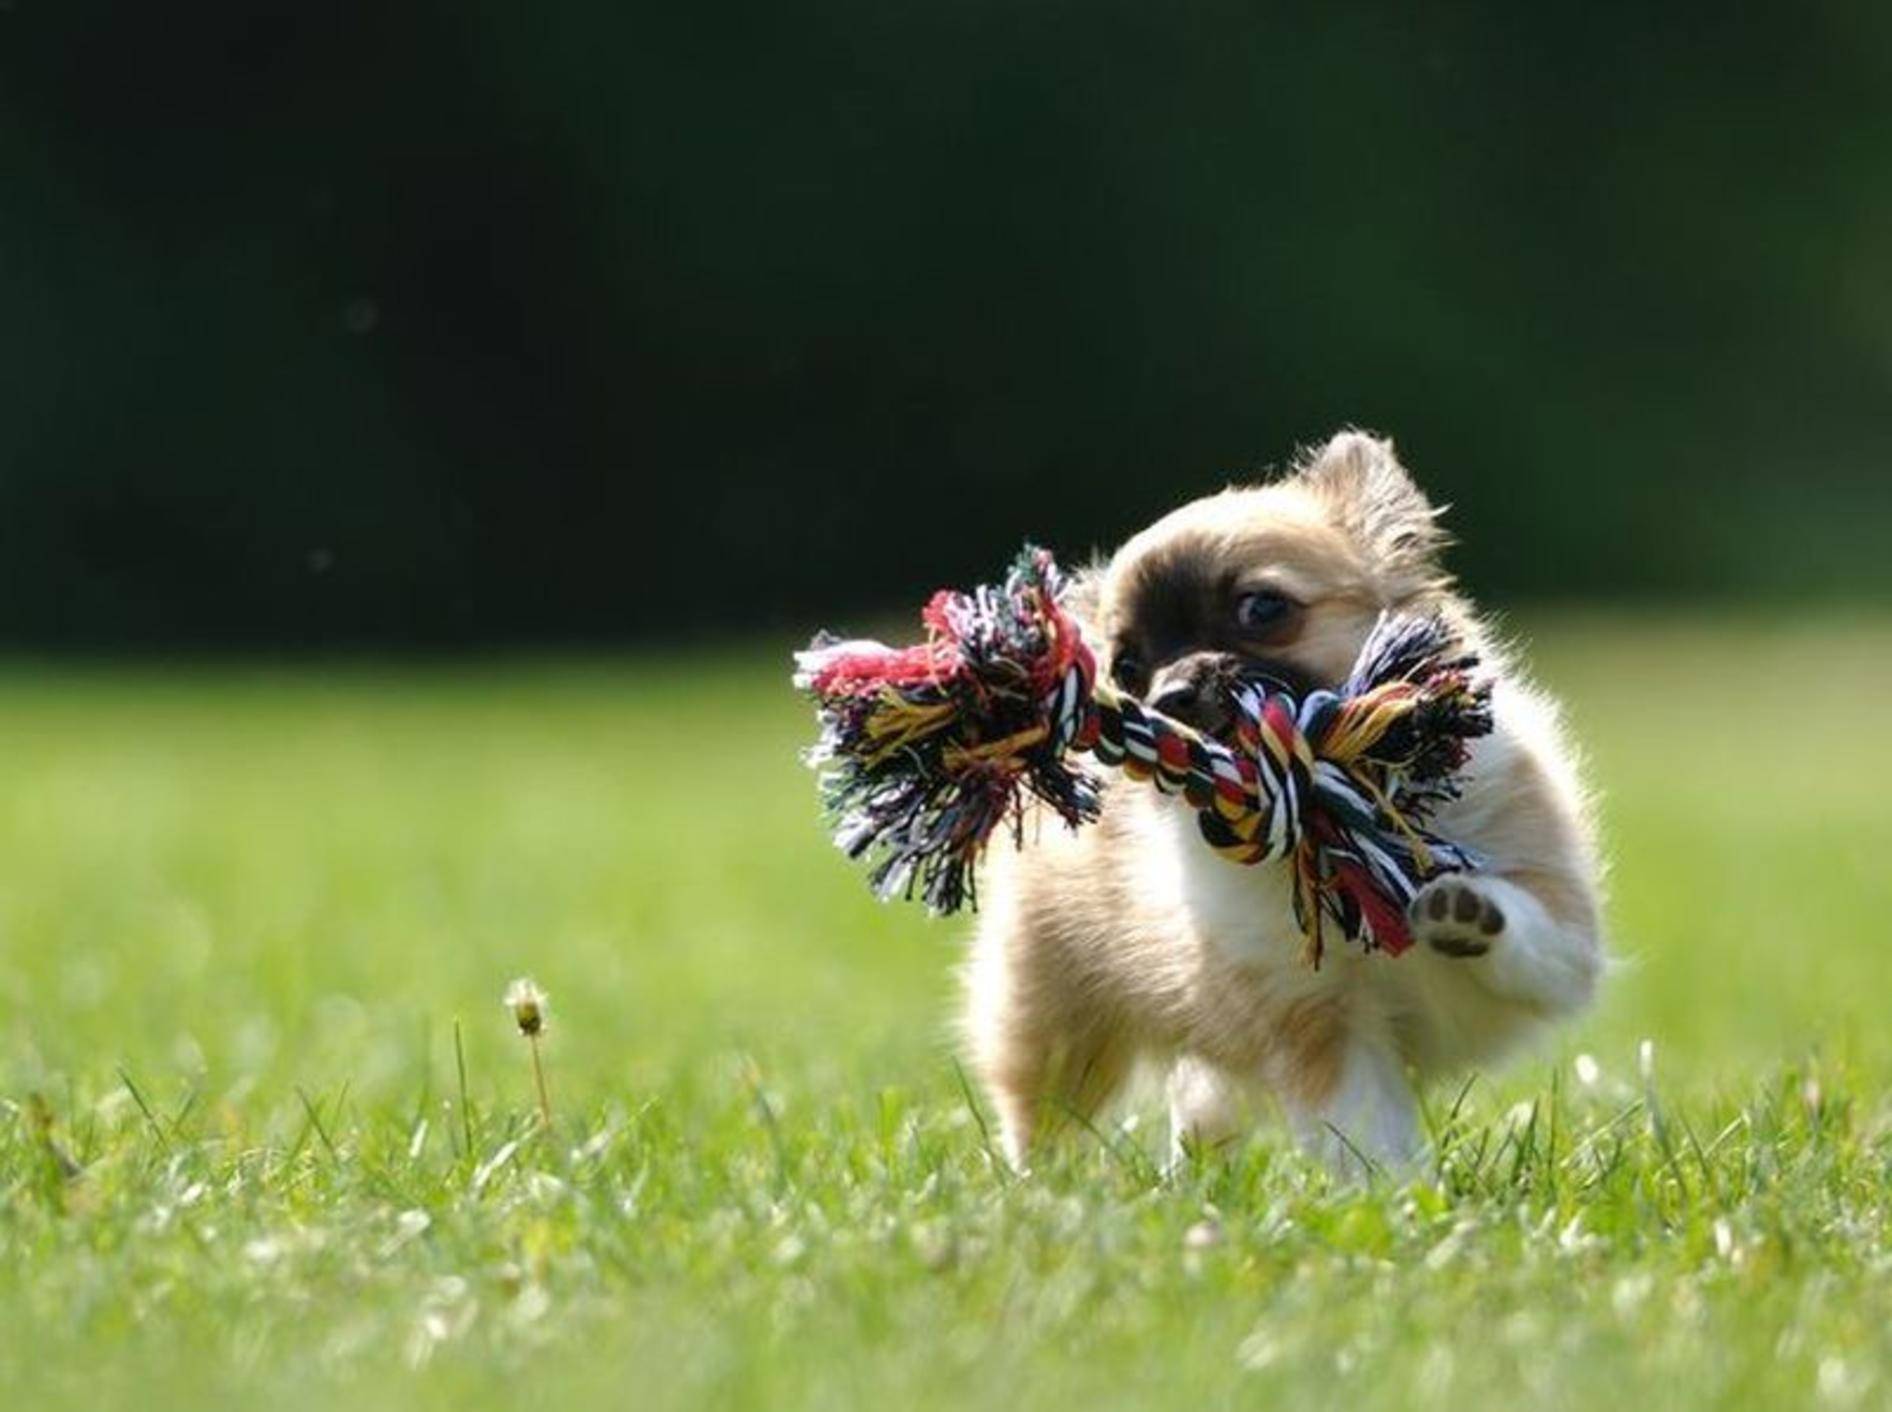 Ungewöhnliche Reaktion Hund streckt Spielzeugschwein die Zunge raus